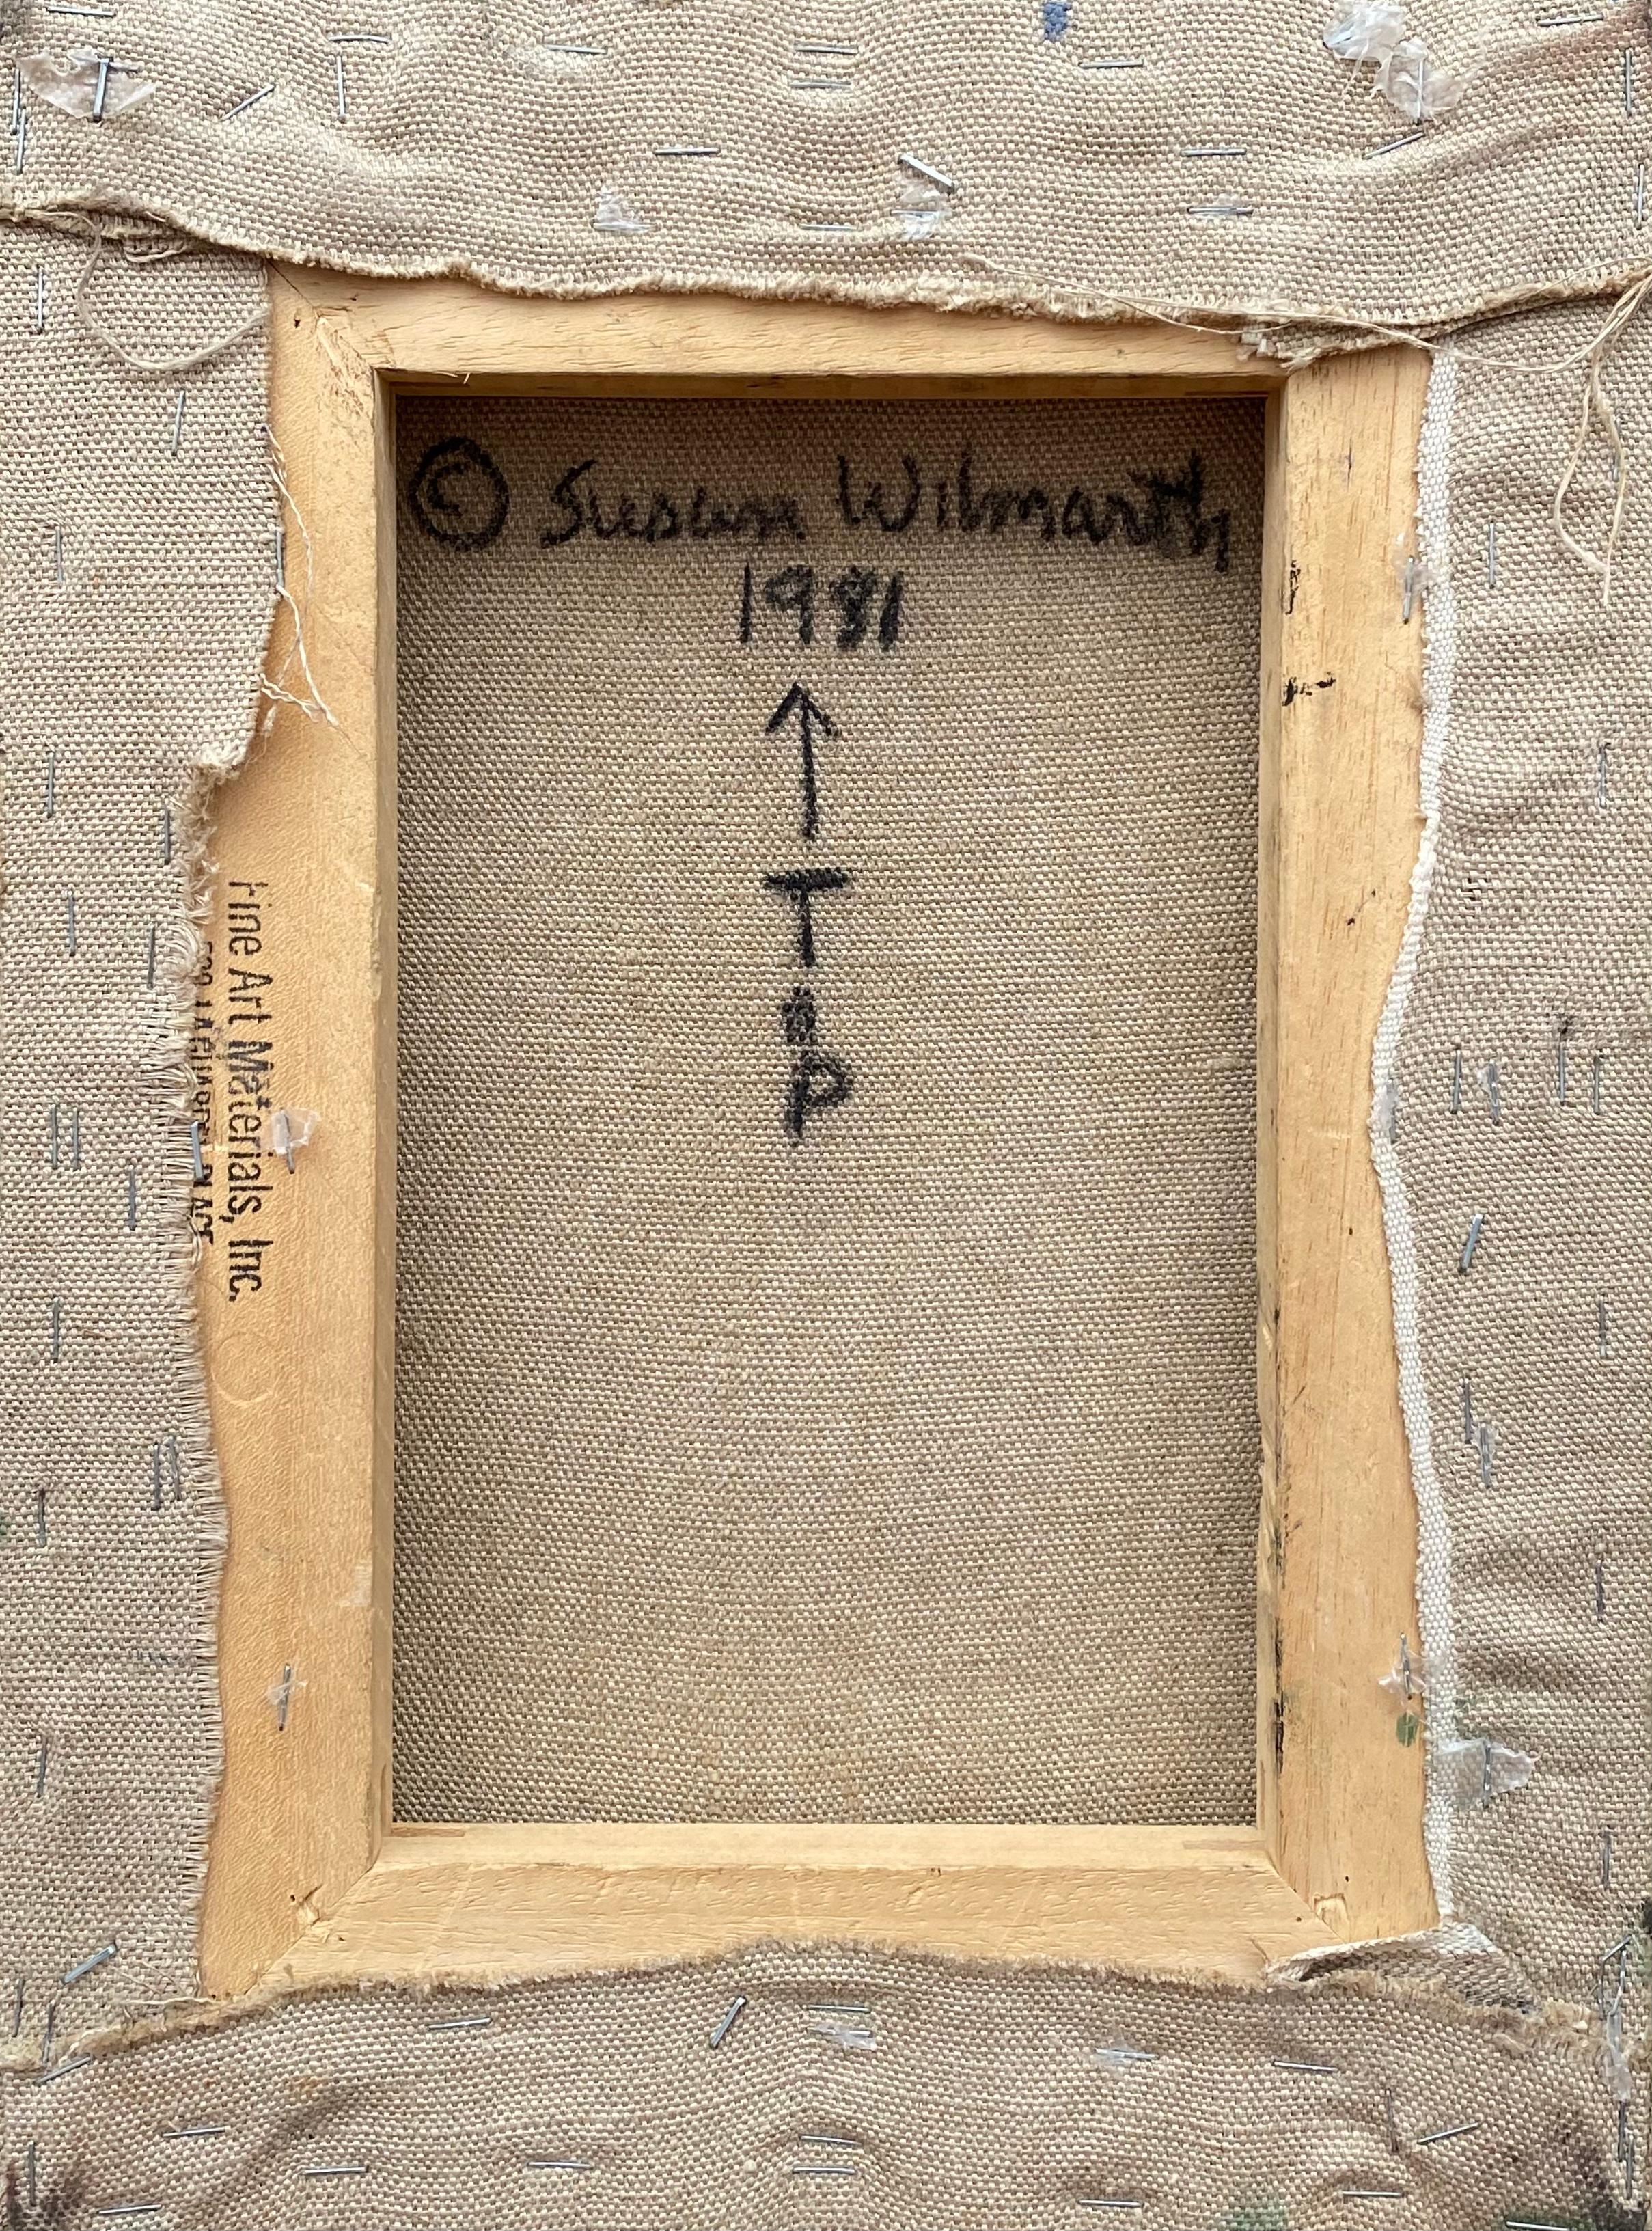 Stark strukturiertes Acryl auf Leinwand von Susan Wilmarth. Verso signiert und datiert 1981. Unbetitelt.  Der Zustand ist ausgezeichnet. Ungerahmt. Provenienz:  Ein Sammler aus Long Island, New York.

Susan Wilmarth wurde 1942 geboren und ist für